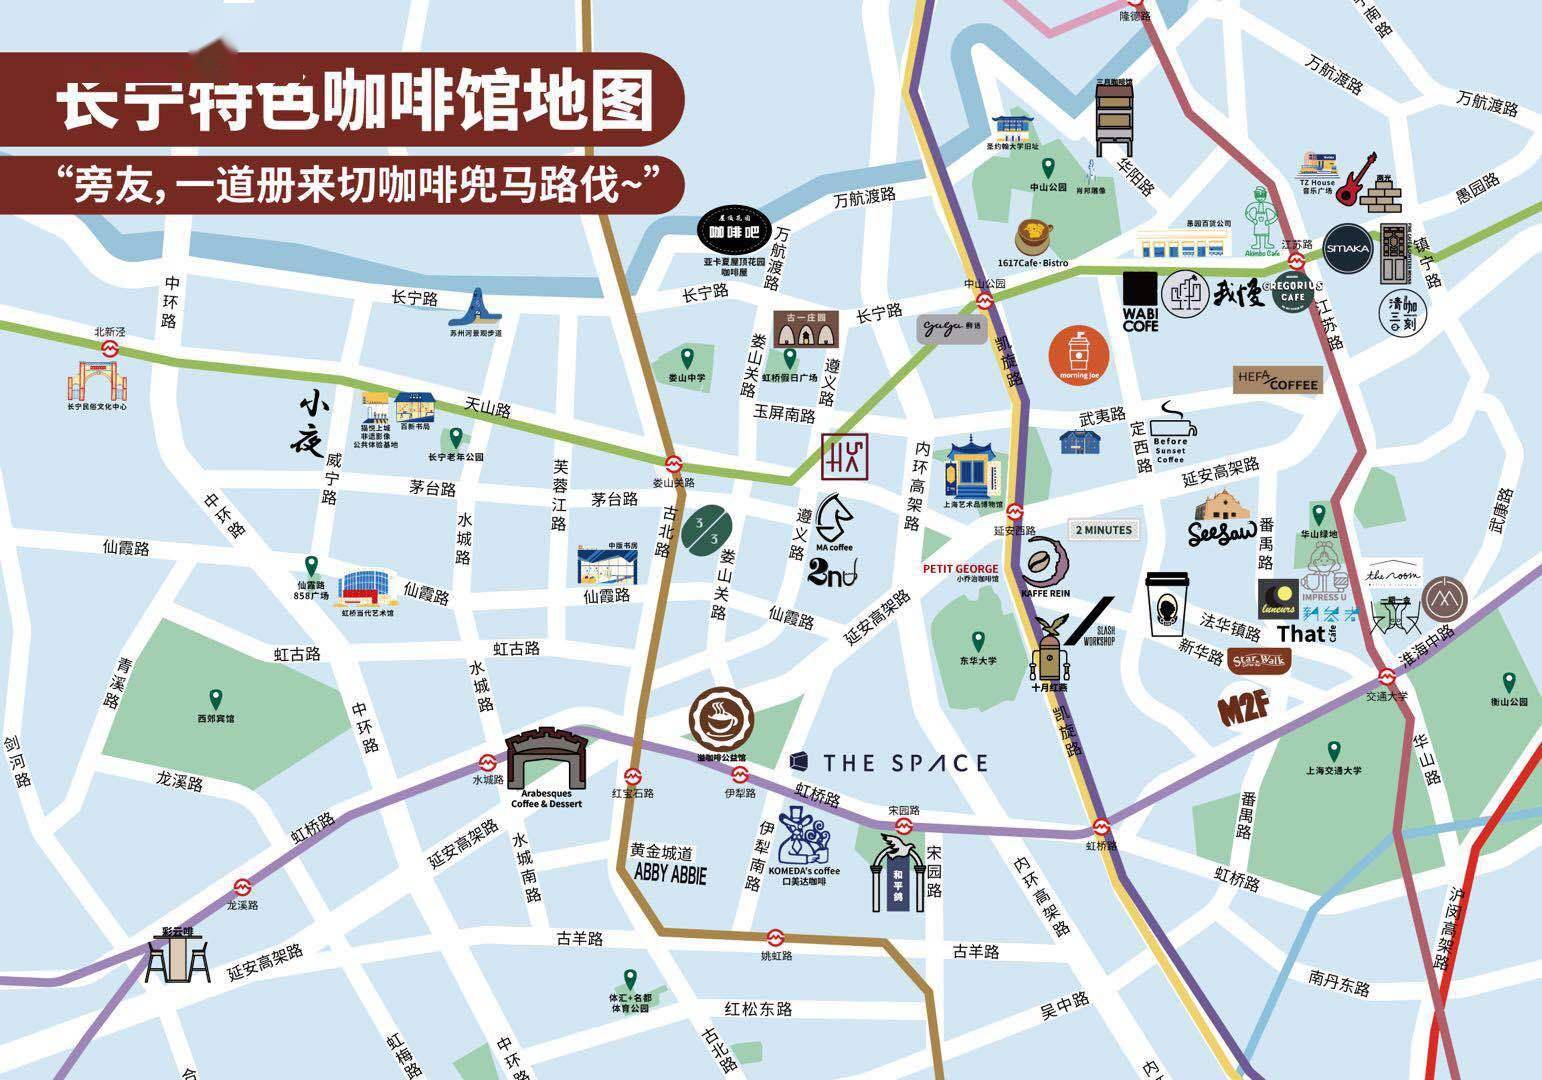 长宁咖啡文化节开幕，一张网红地图带你“喝咖啡兜马路”，还有咖啡戏剧节、咖啡市集等你解锁